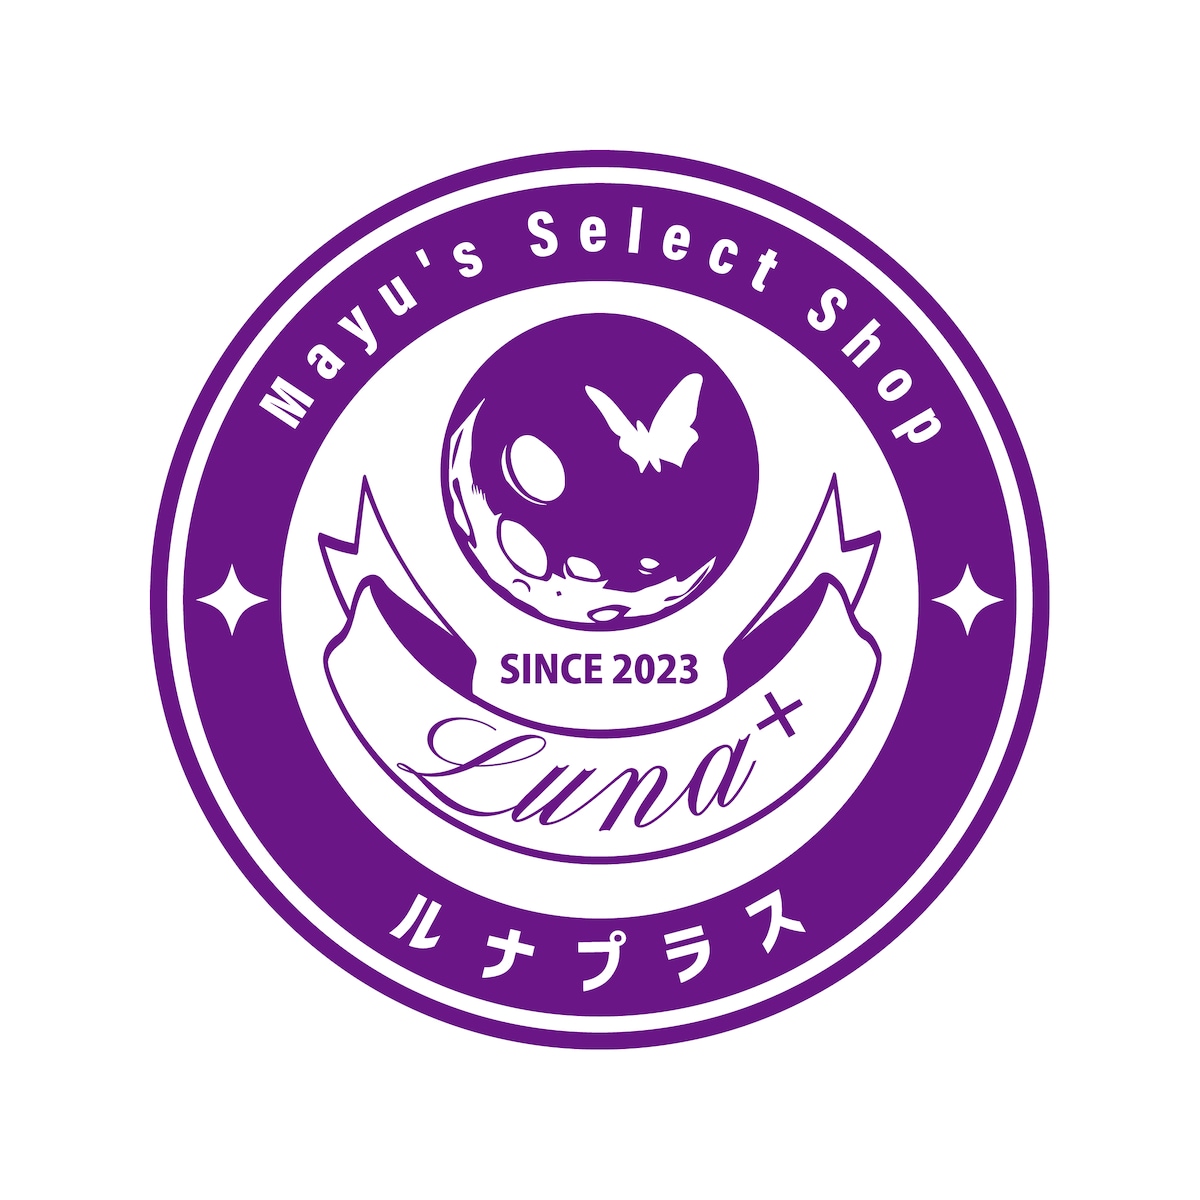 Luna+ (ルナプラス) 様のロゴデザイン